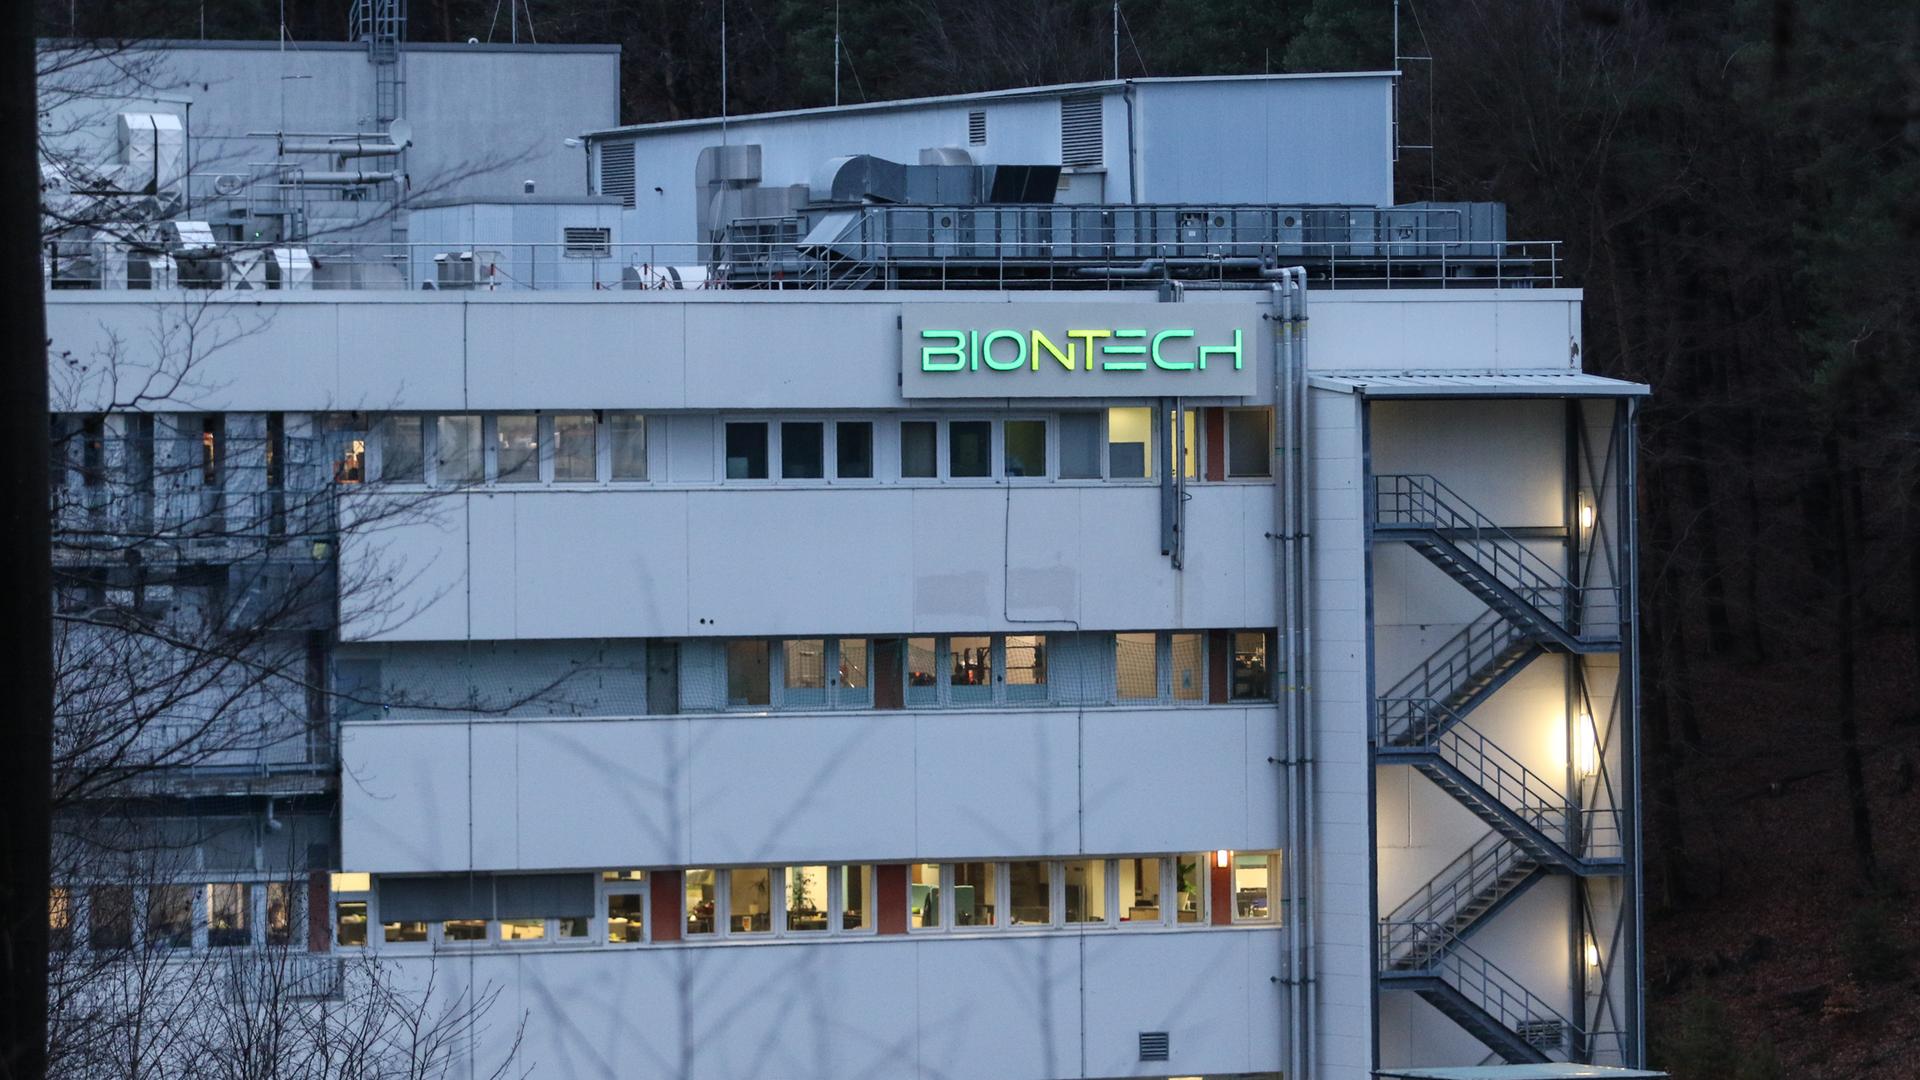 biontech-startet-impfstoff-produktion-in-marburg-hessenschau-de